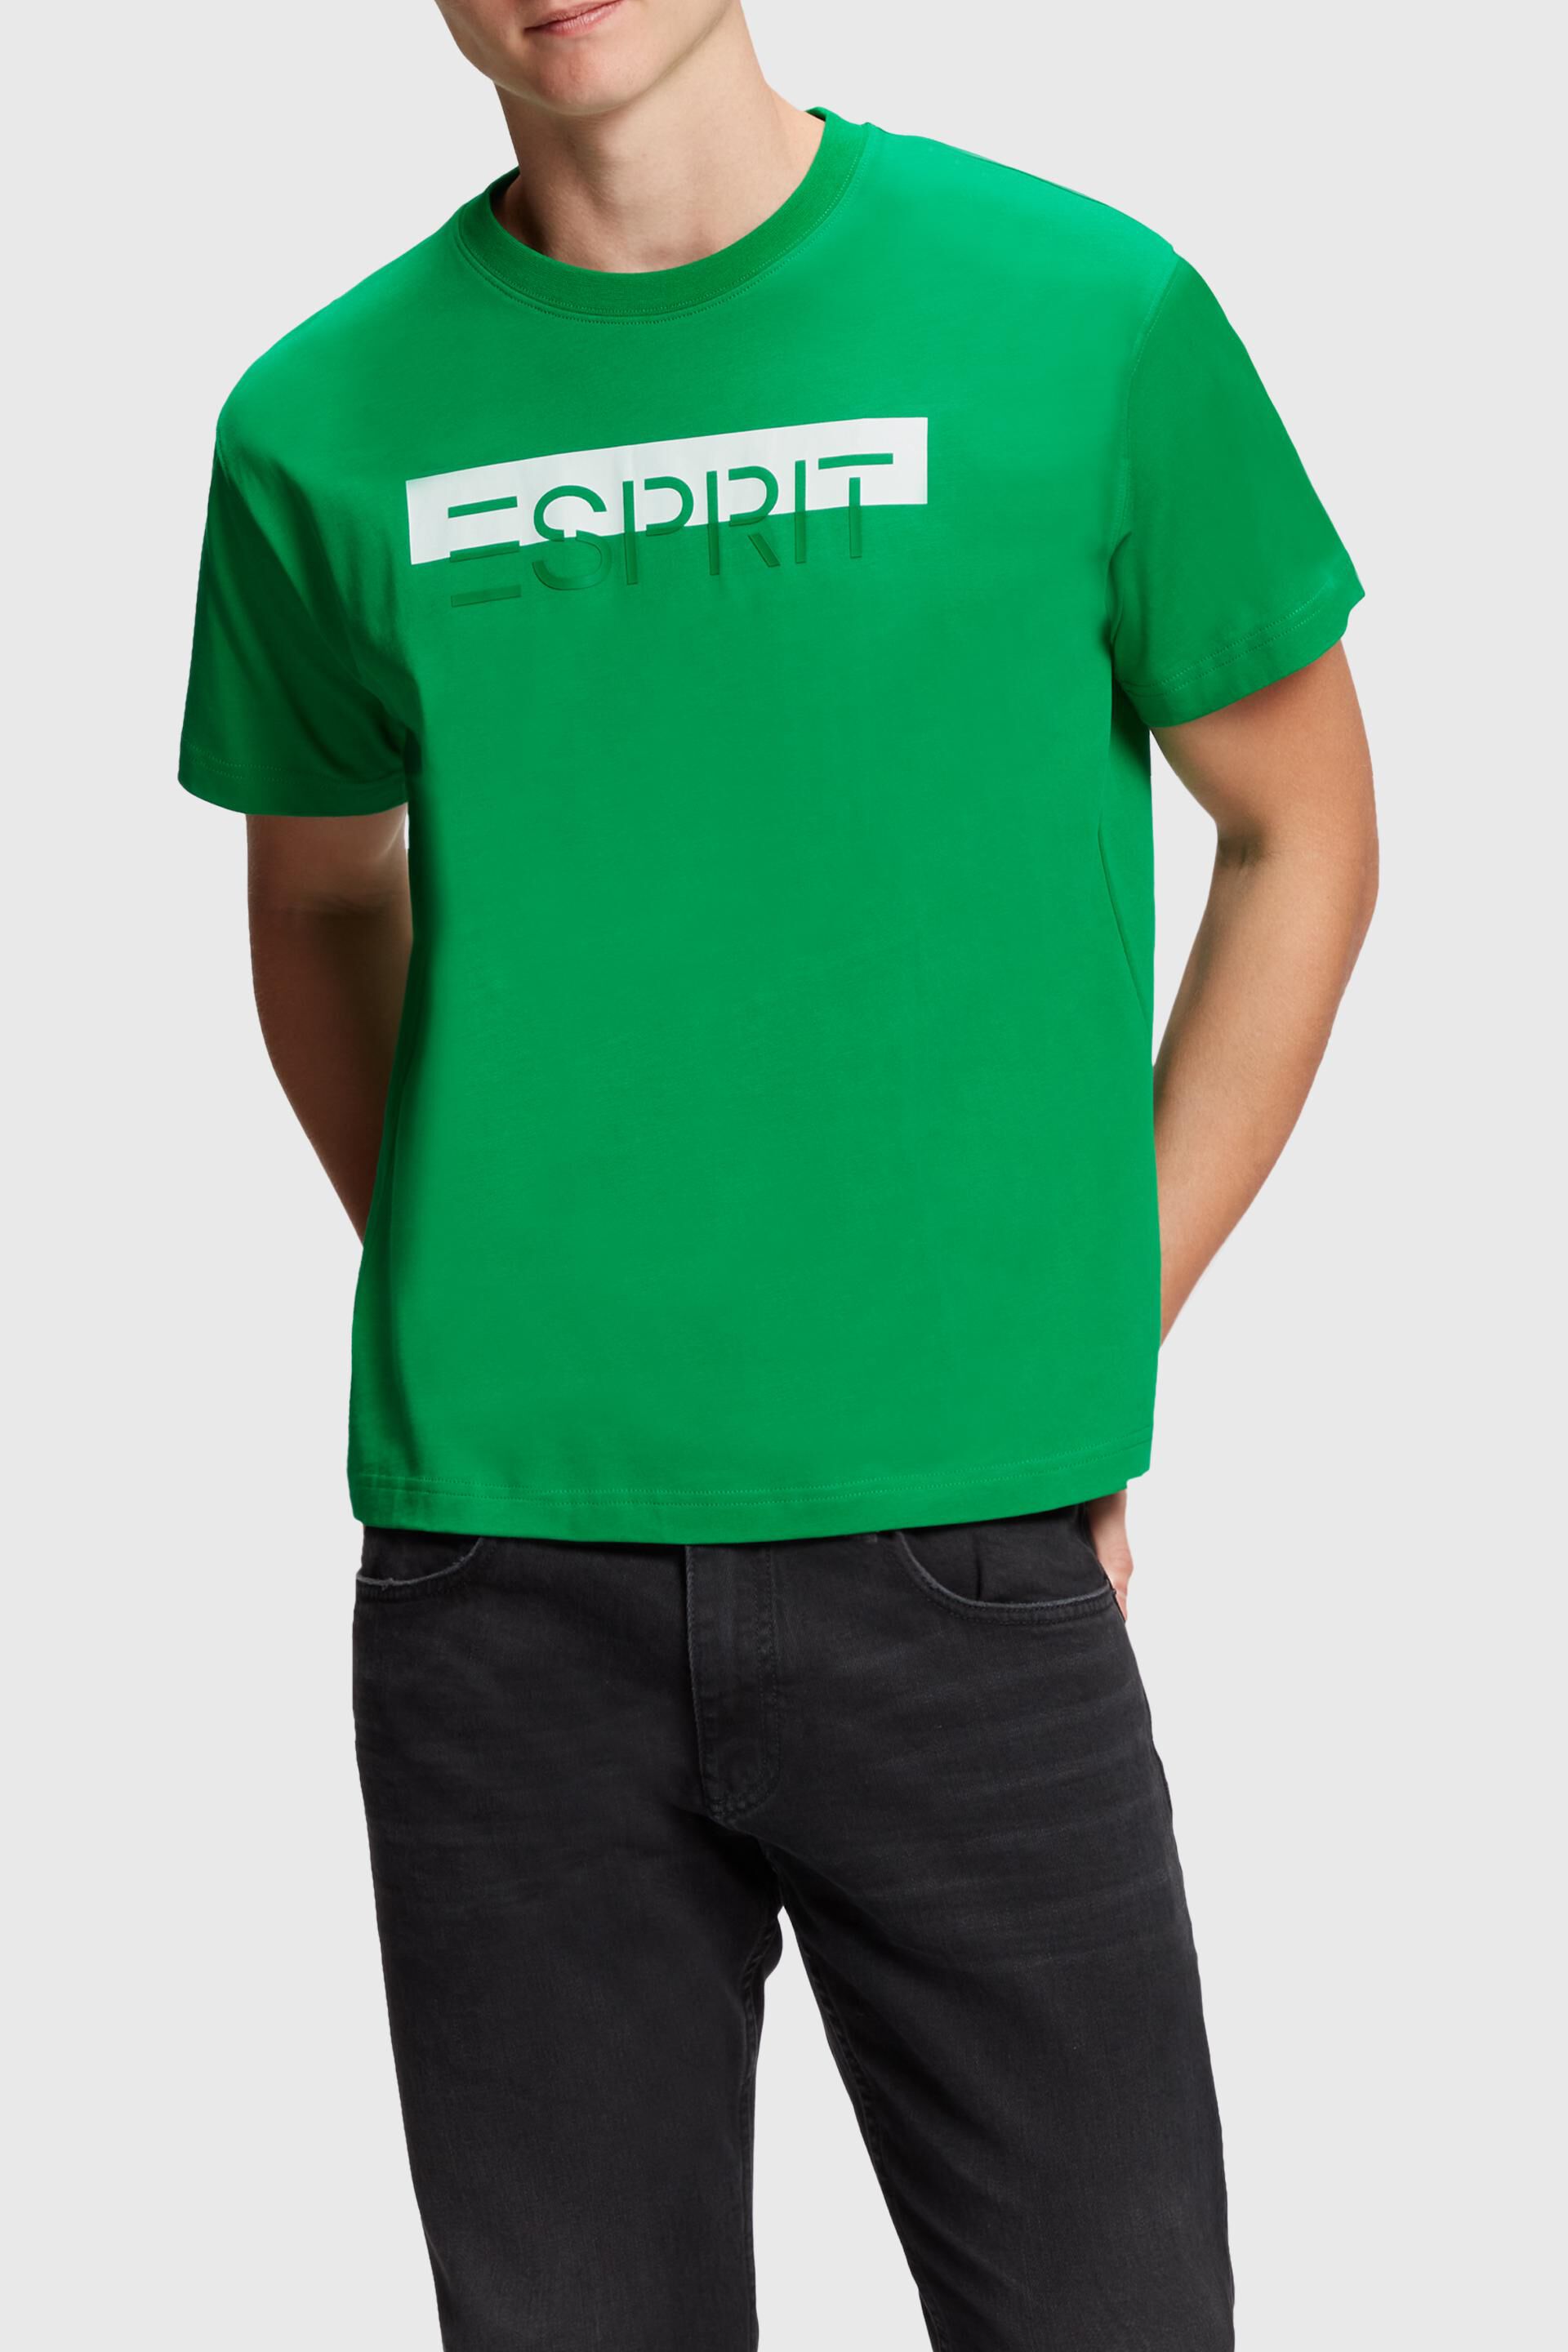 Esprit Bikini Mattglänzendes T-Shirt mit Logo-Applikation